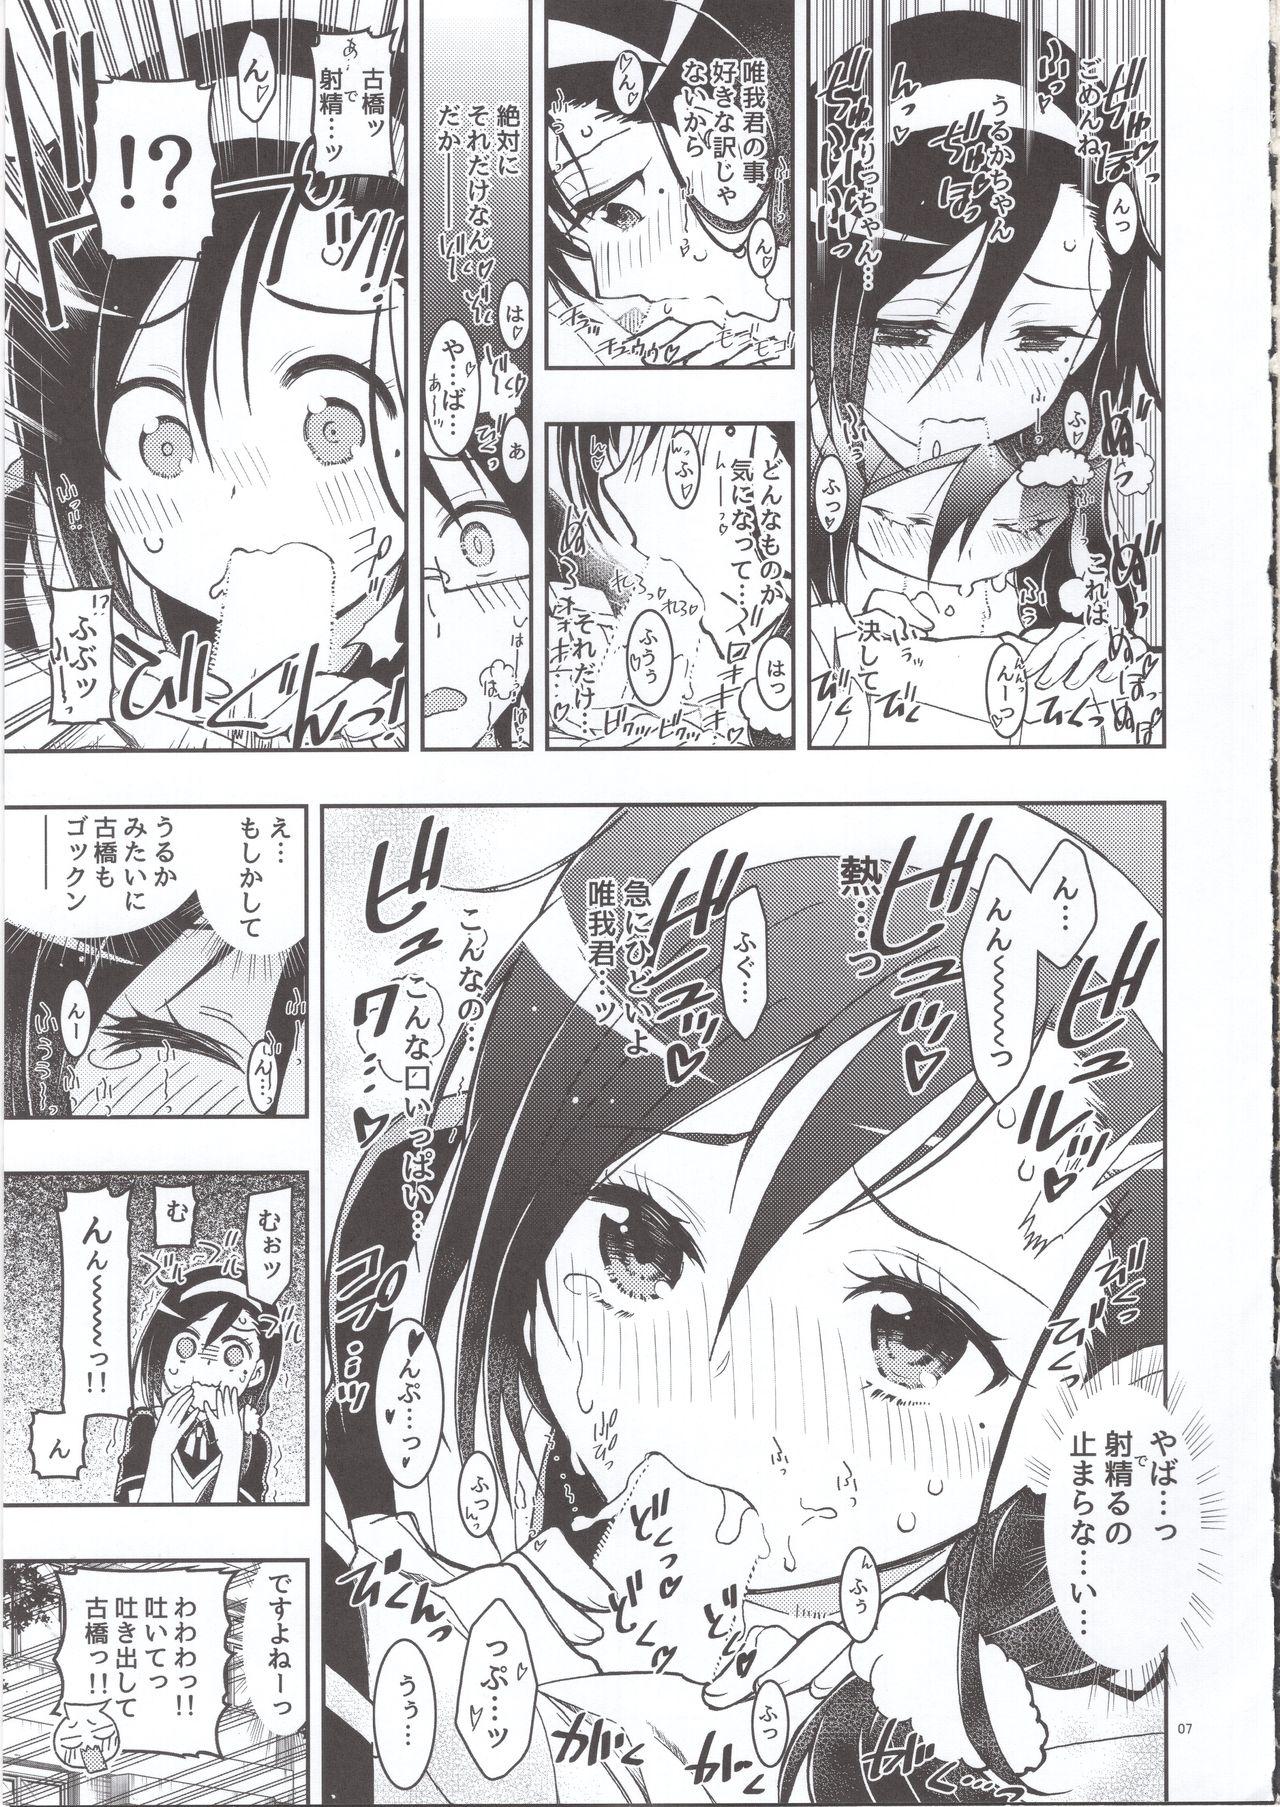 Boobies BOKUTACHIHA FUMINOMO ASUMIMO KAWAII - Bokutachi wa benkyou ga dekinai Pierced - Page 6